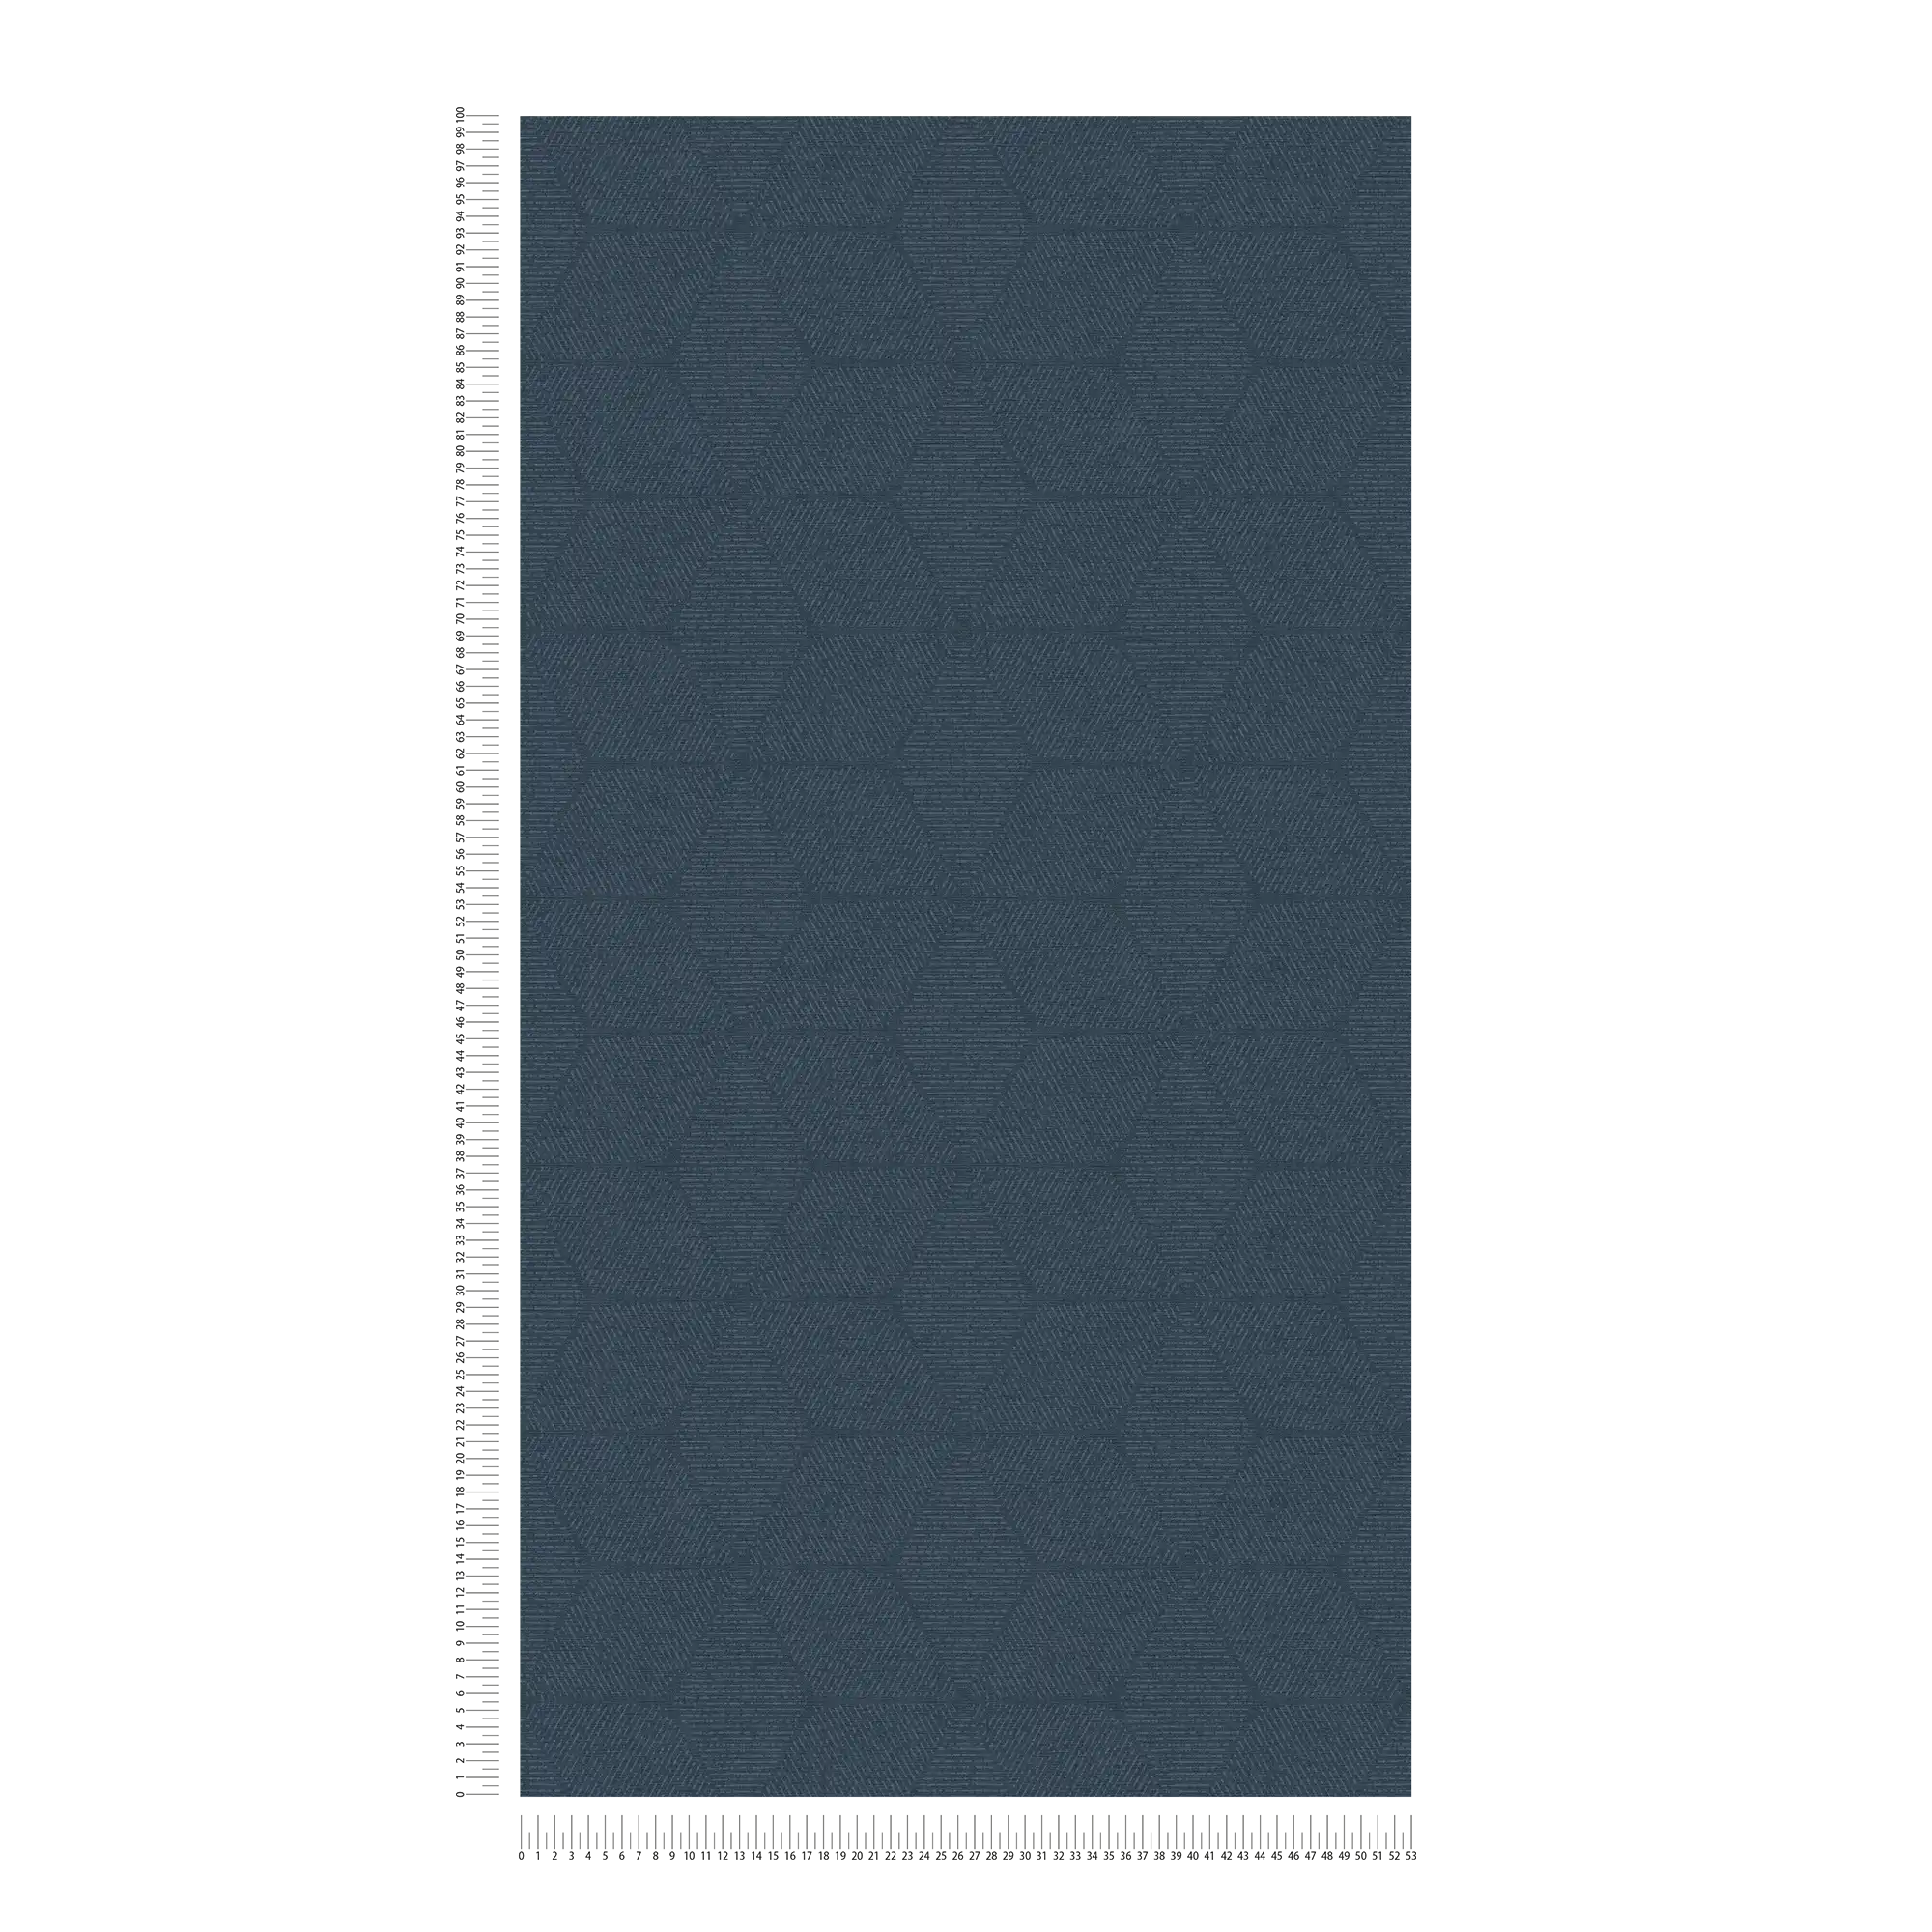             Vliesbehang met bloemenmonochroom patroon - blauw
        